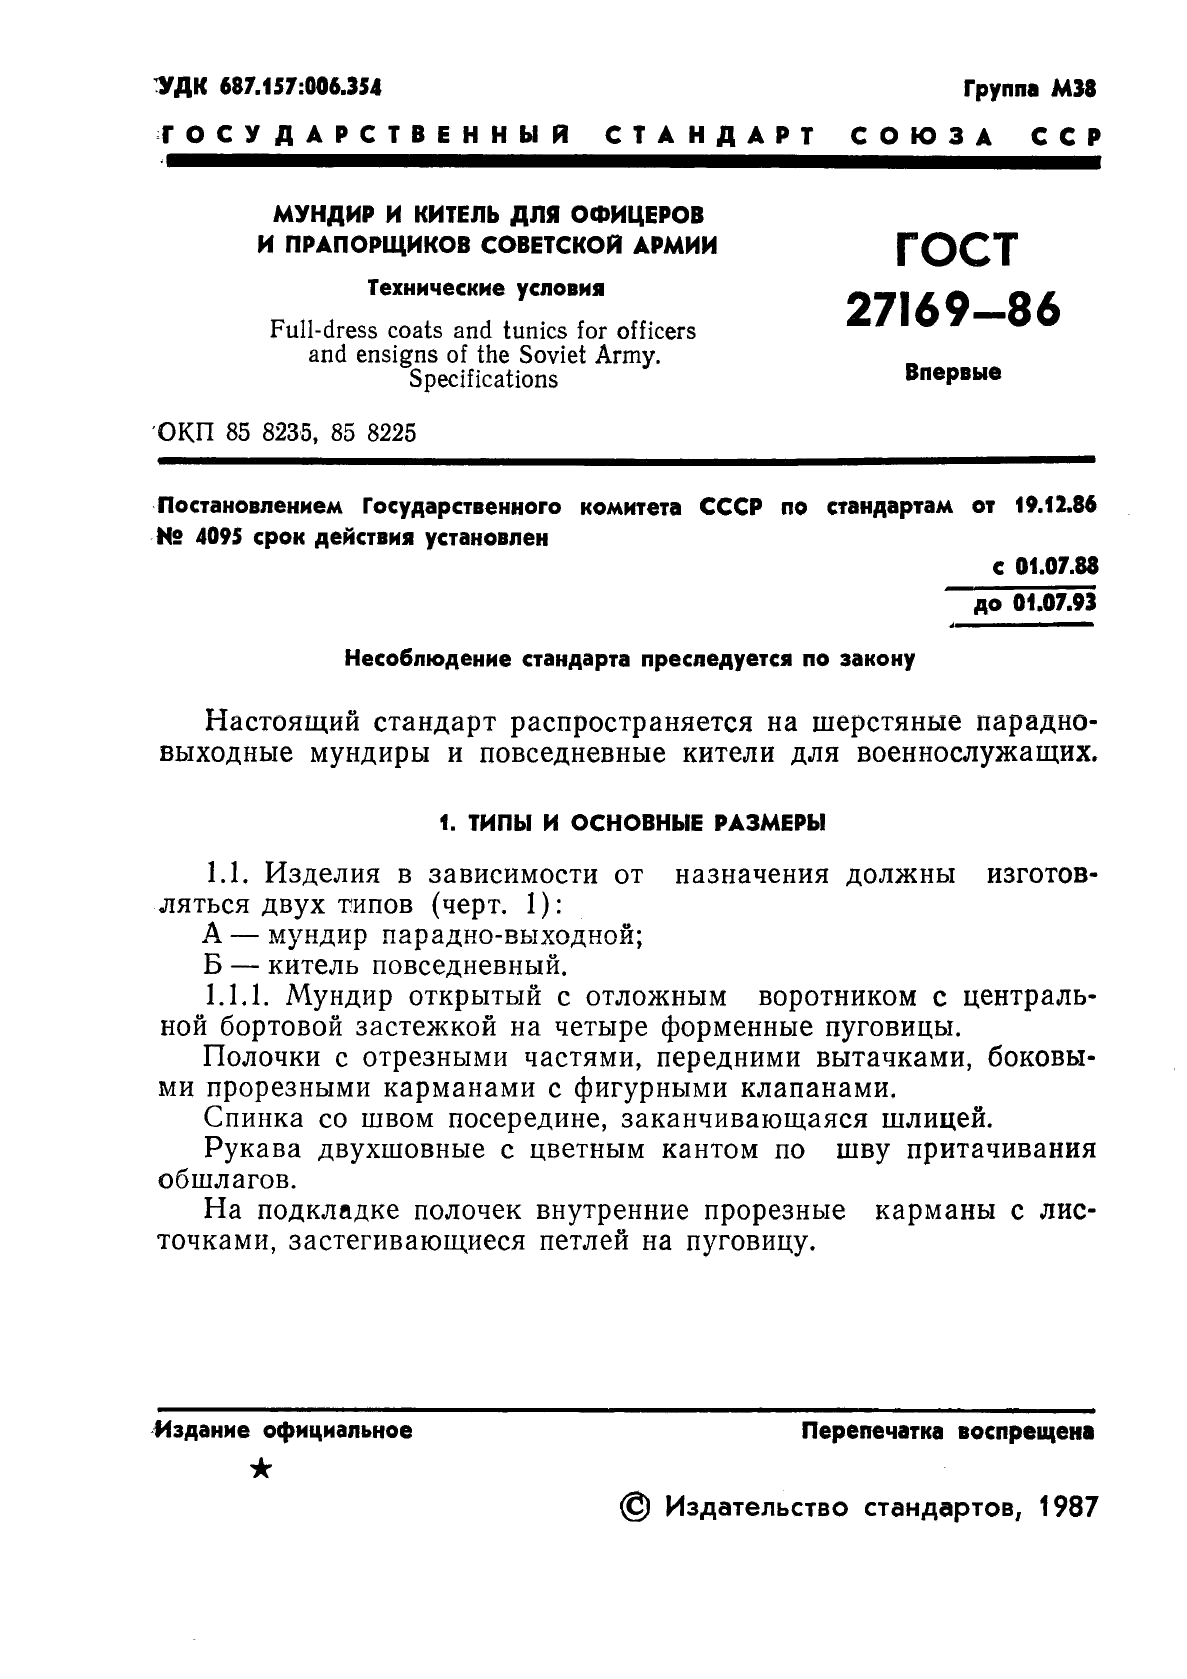 ГОСТ 27169-86 Мундир и китель для офицеров и прапорщиков Советской Армии. Технические условия (фото 3 из 42)